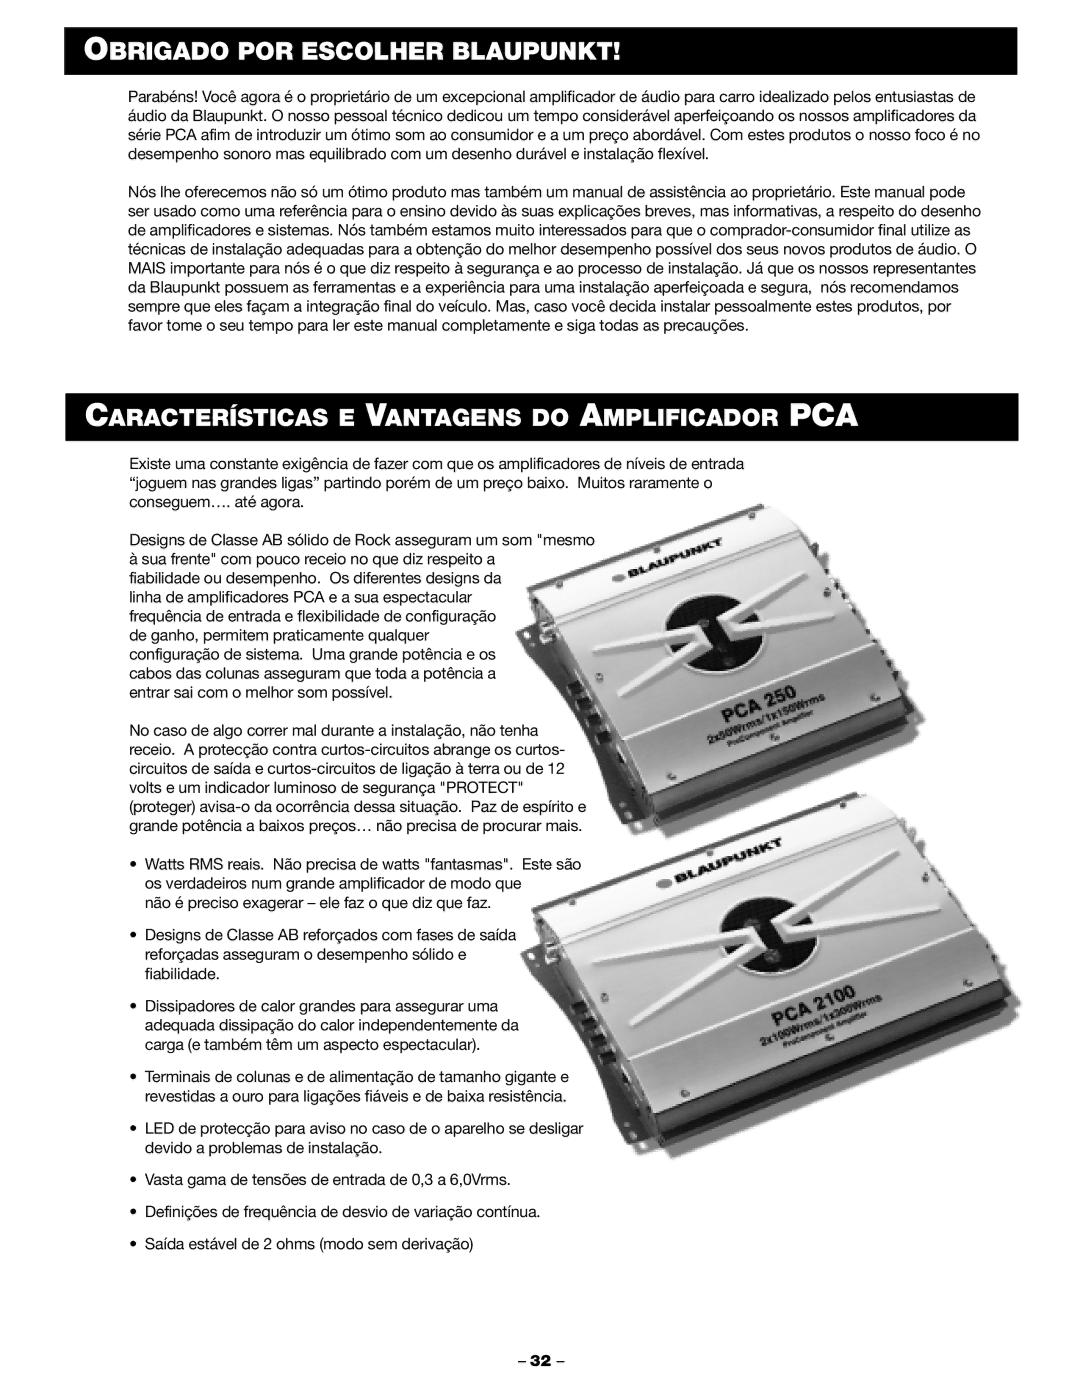 Blaupunkt PCA 2100, PCA 250 manual Obrigado POR Escolher Blaupunkt, Características E Vantagens do Amplificador PCA 